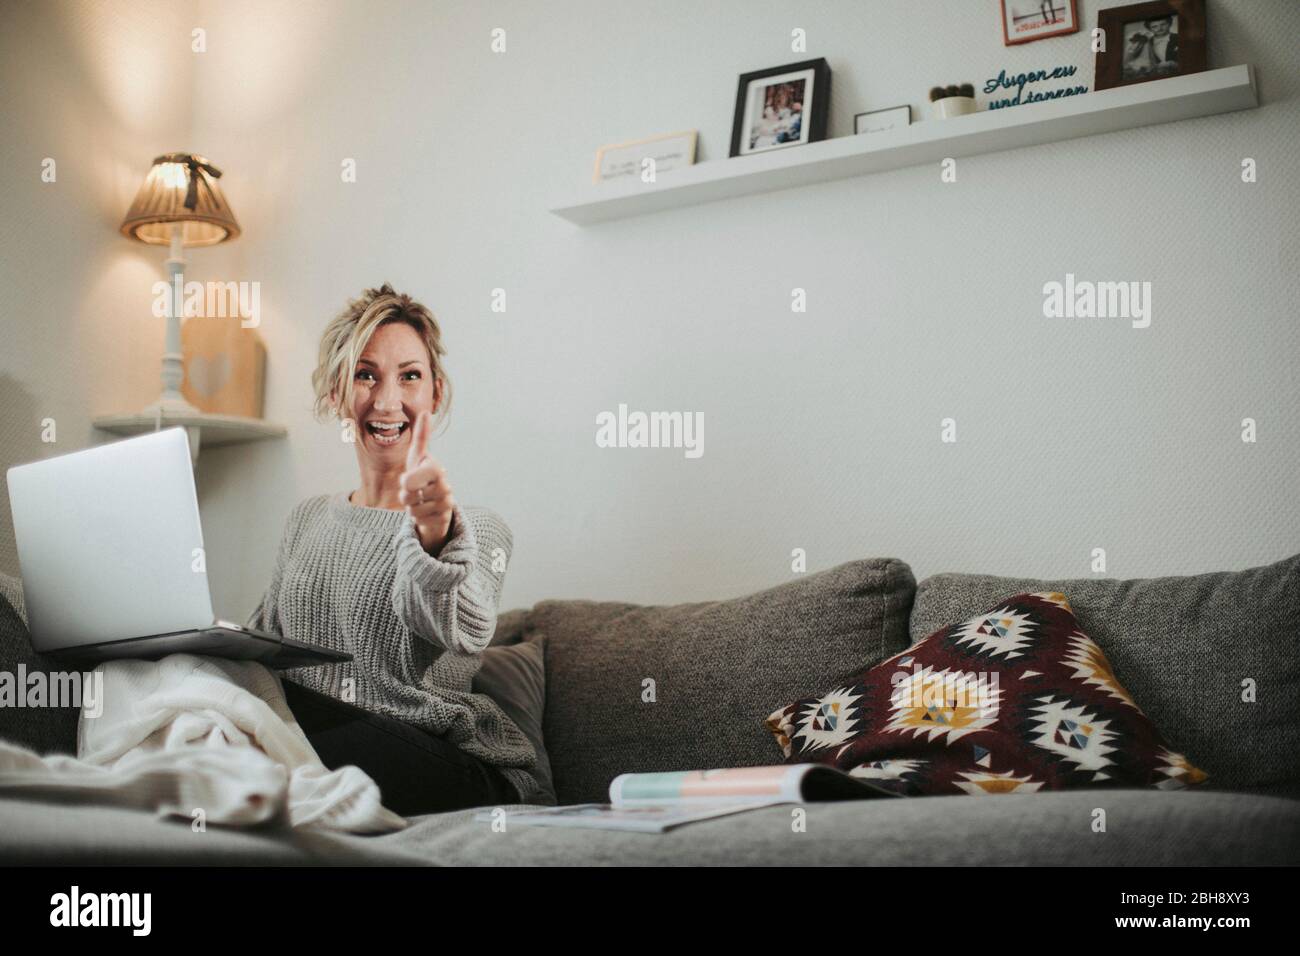 Frau sitzt entspannt mit Laptop auf der Couch, Freude, Daumen hoch Stock Photo